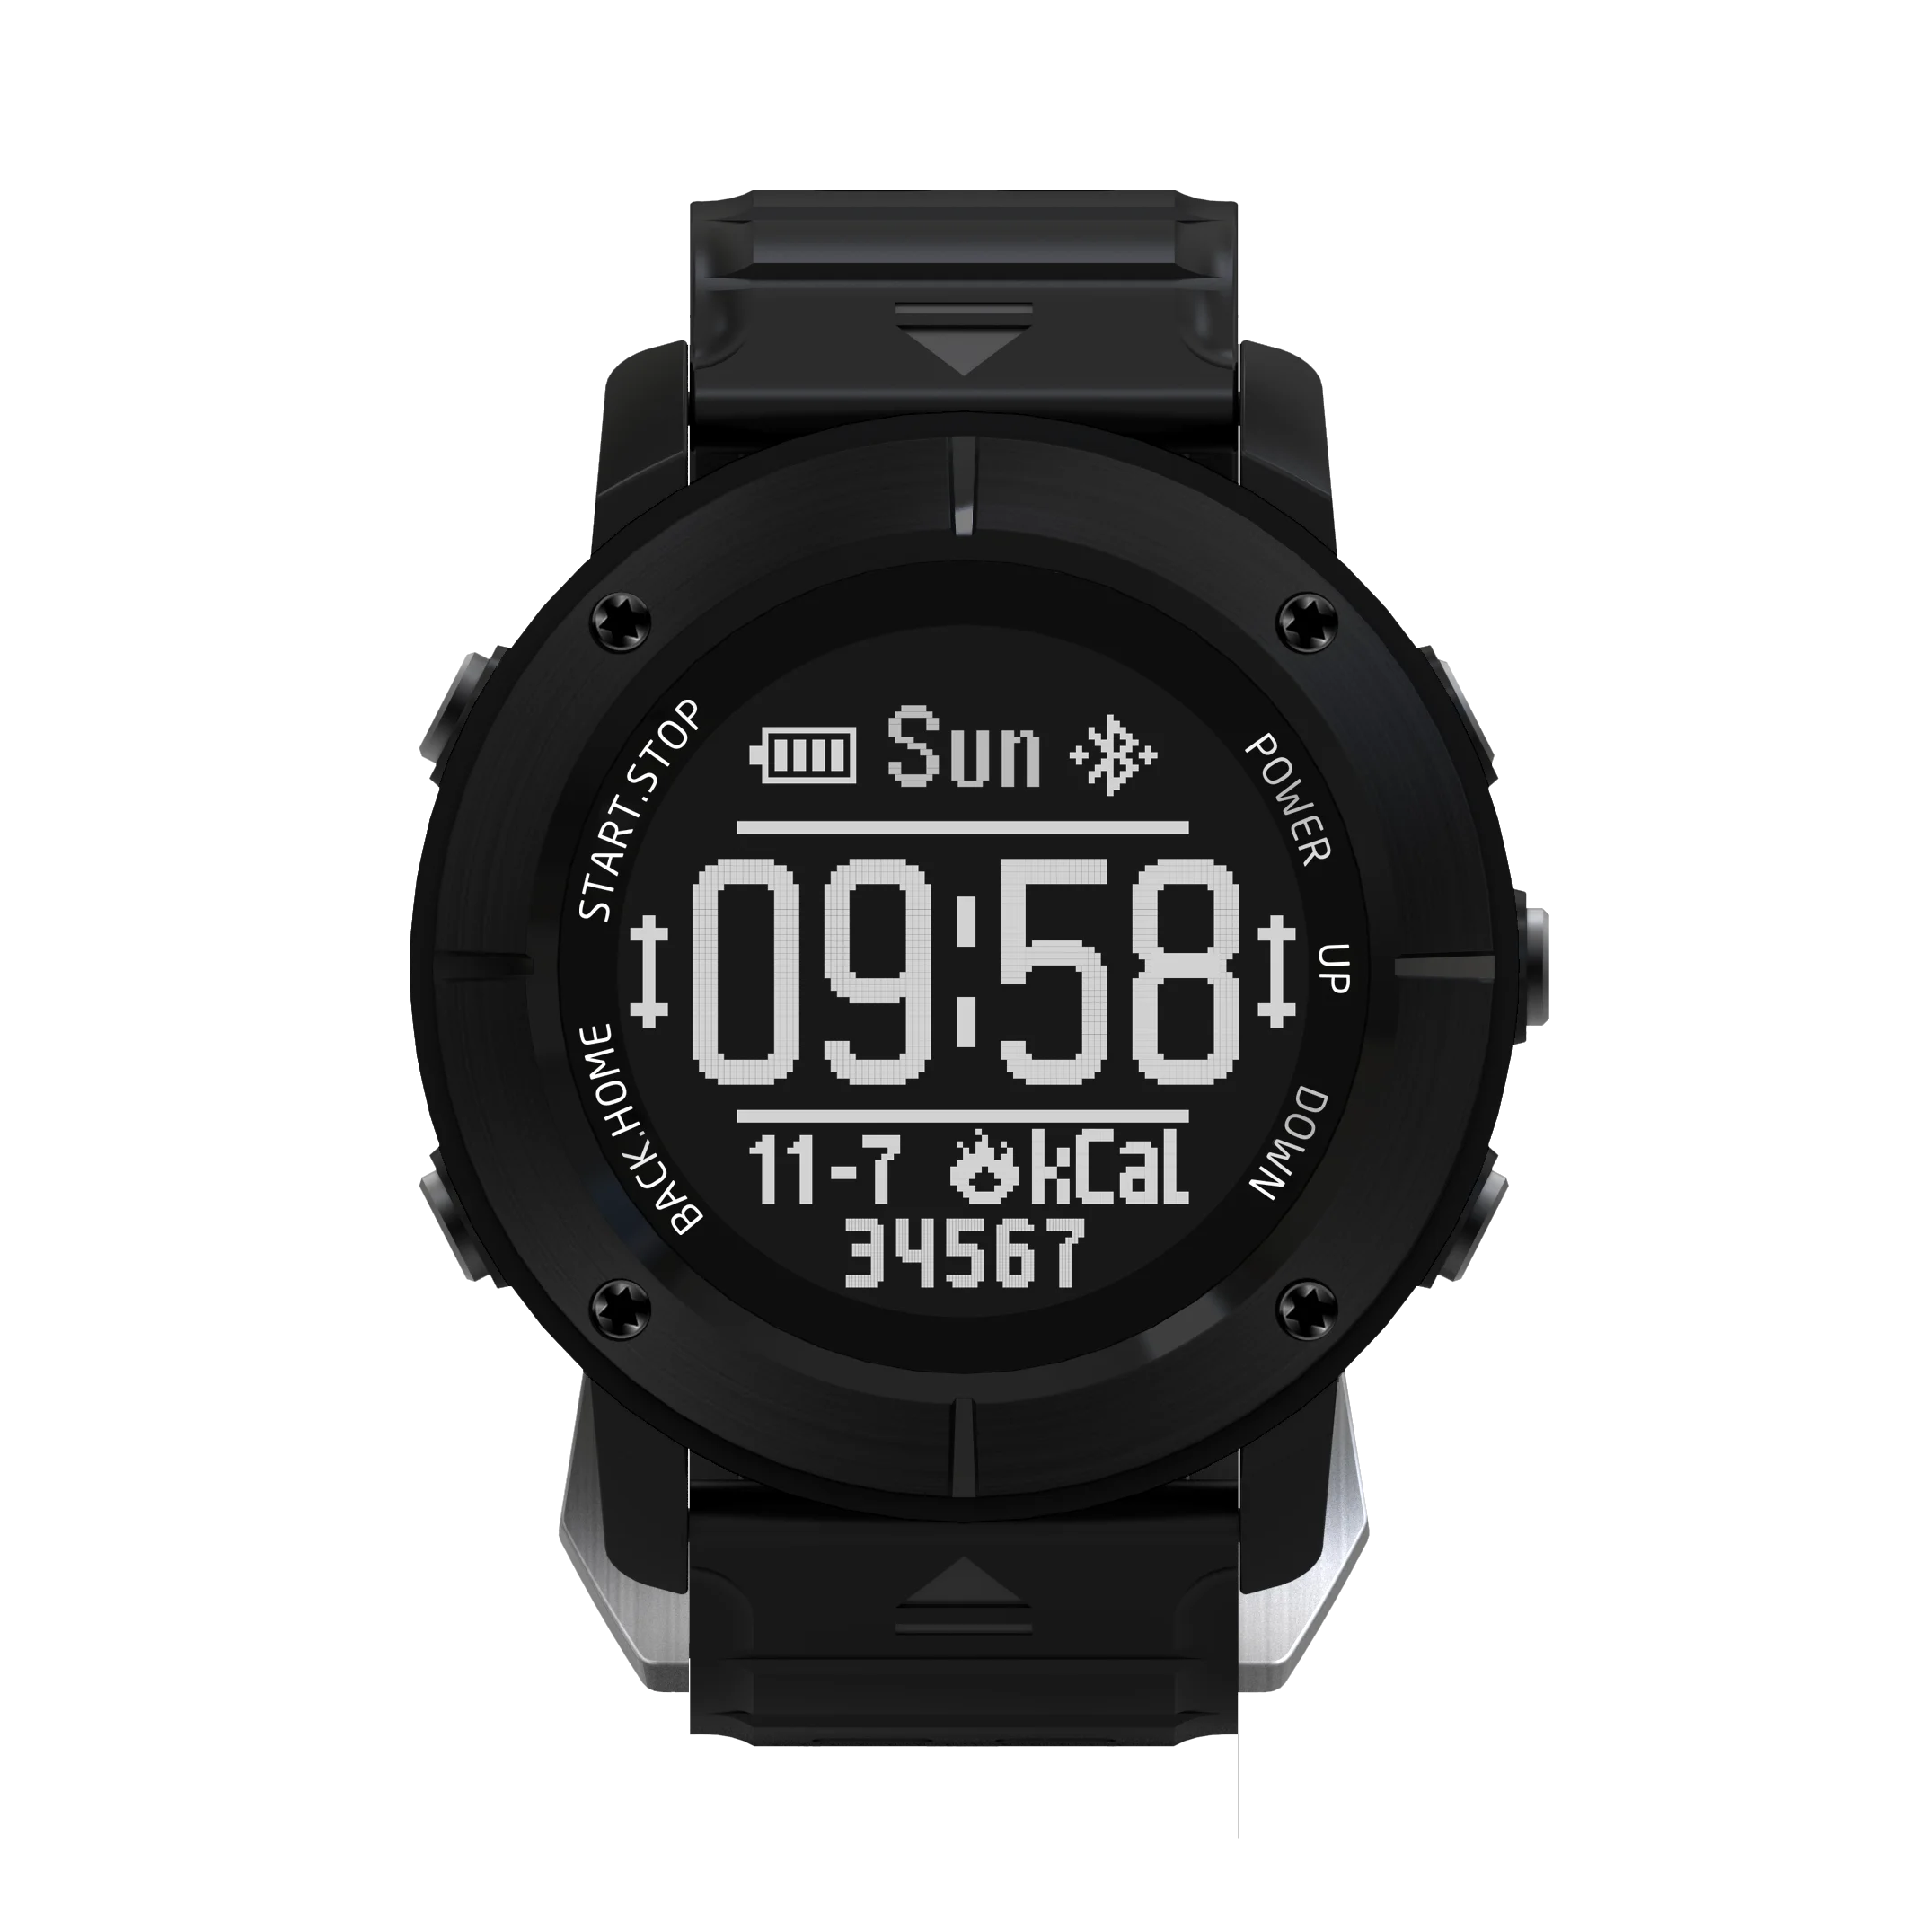 UW80C уличные Bluetooth Смарт часы gps позиционирование часы скалолазание бег глубина сердечного ритма водонепроницаемый для Android IOS Телефон - Цвет: Черный